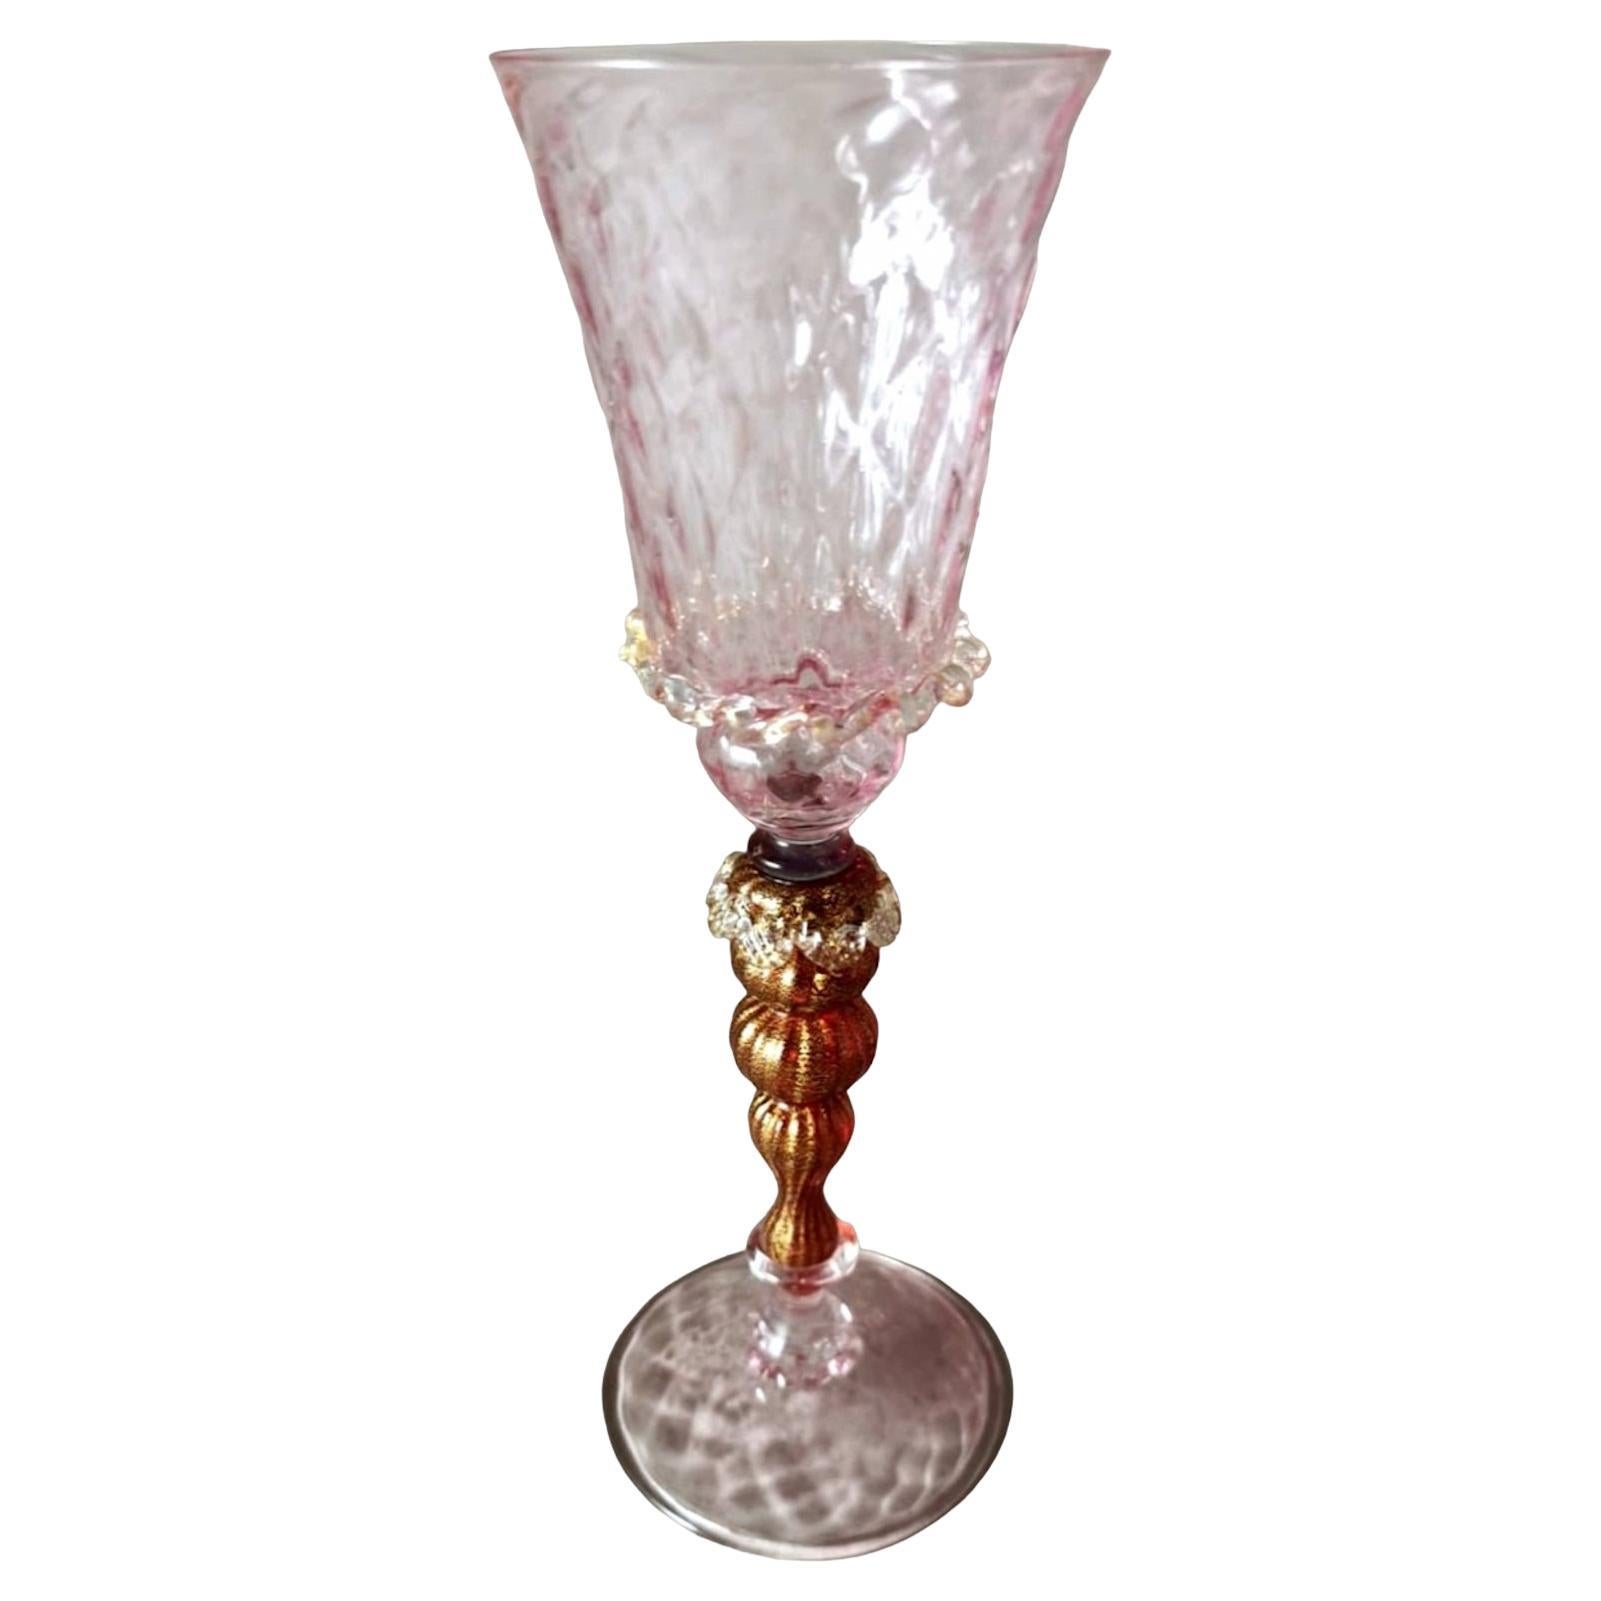 Gobelet en verre de Murano soufflé rose tipetto avec décoration de feuilles d'or